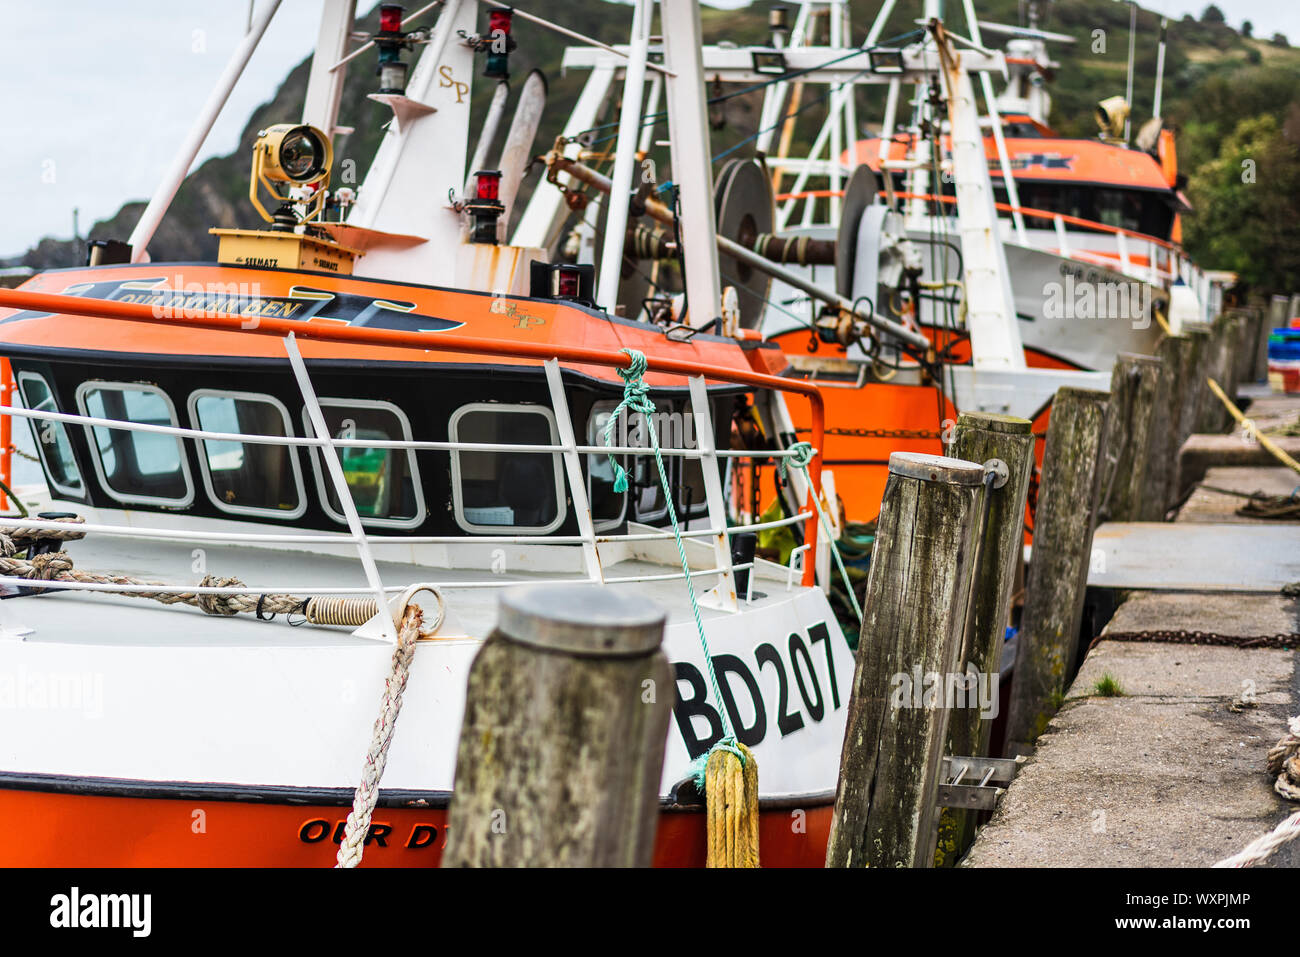 Les chalutiers de pêche côtière appartenant à S&P Chalutiers amarrés au port d'Ilfracombe quay dans le Nord du Devon. Banque D'Images